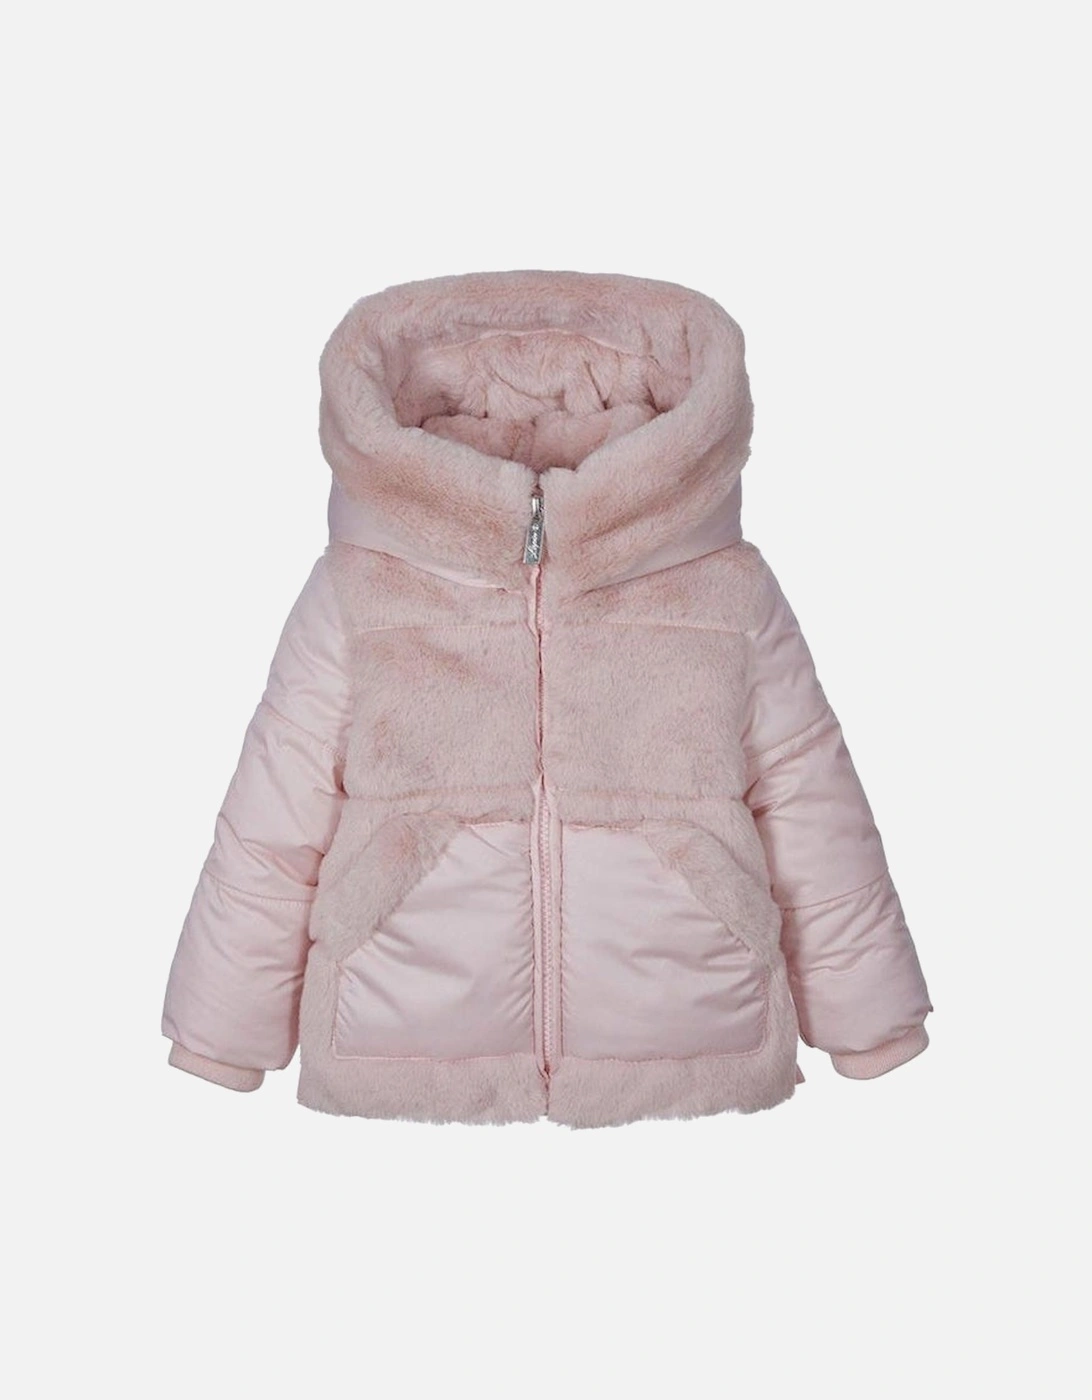 Girls Pink Fur Jacket, 3 of 2